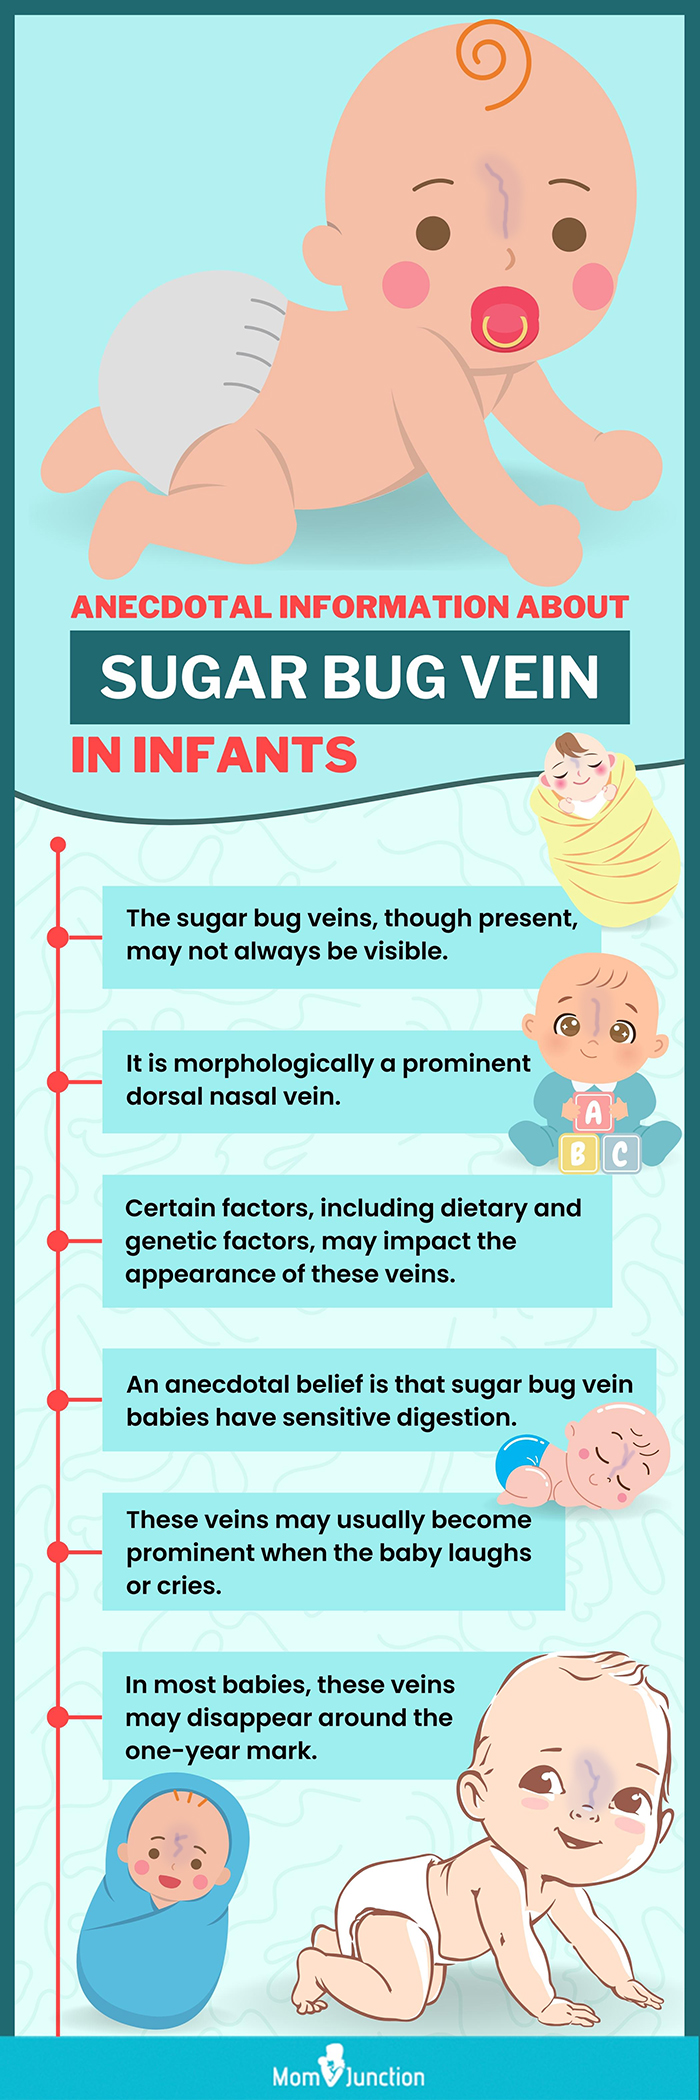 关于婴儿糖虫静脉的轶事信息(信息图)